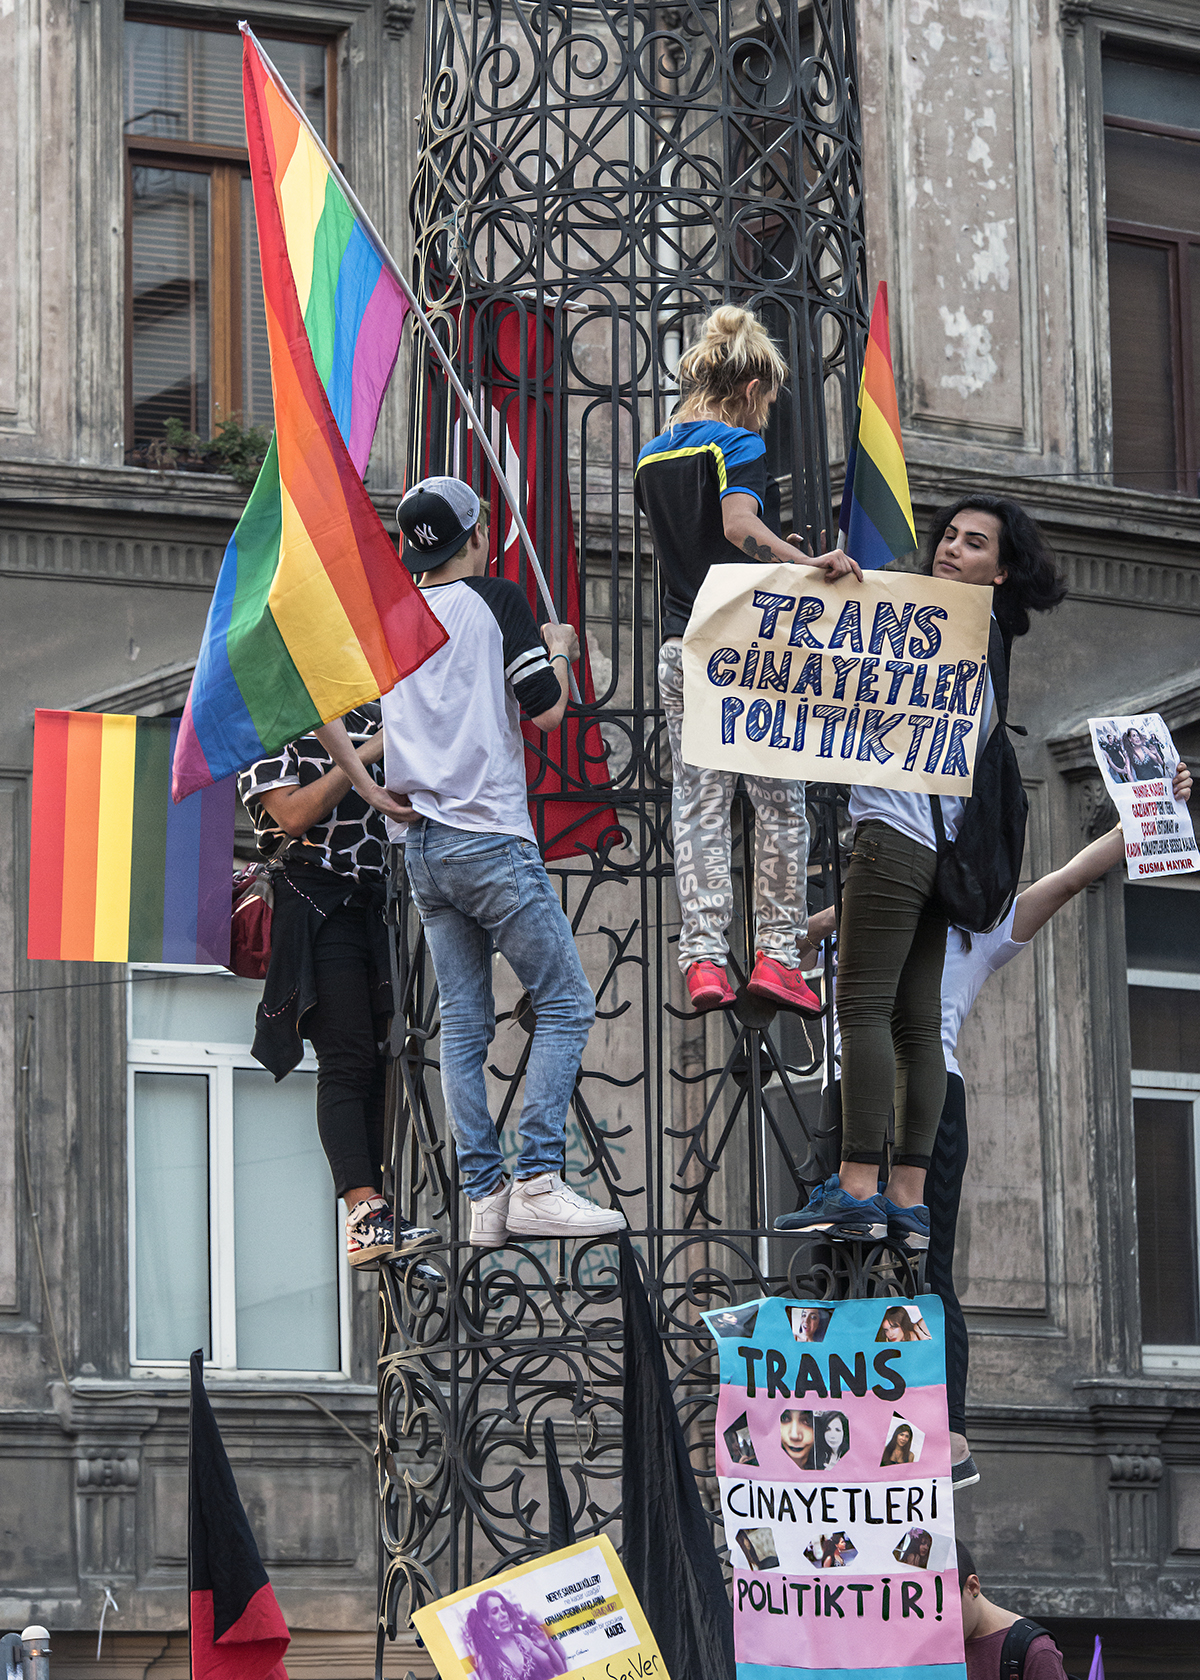 234.Gün —Beyoğlu -  
“Yakılarak katledilen trans kadın Hande Kader için adalet istiyoruz. Adalet talebimizle Galatasaray Meydanı’na yürüyoruz!” LGBT Derneği. 